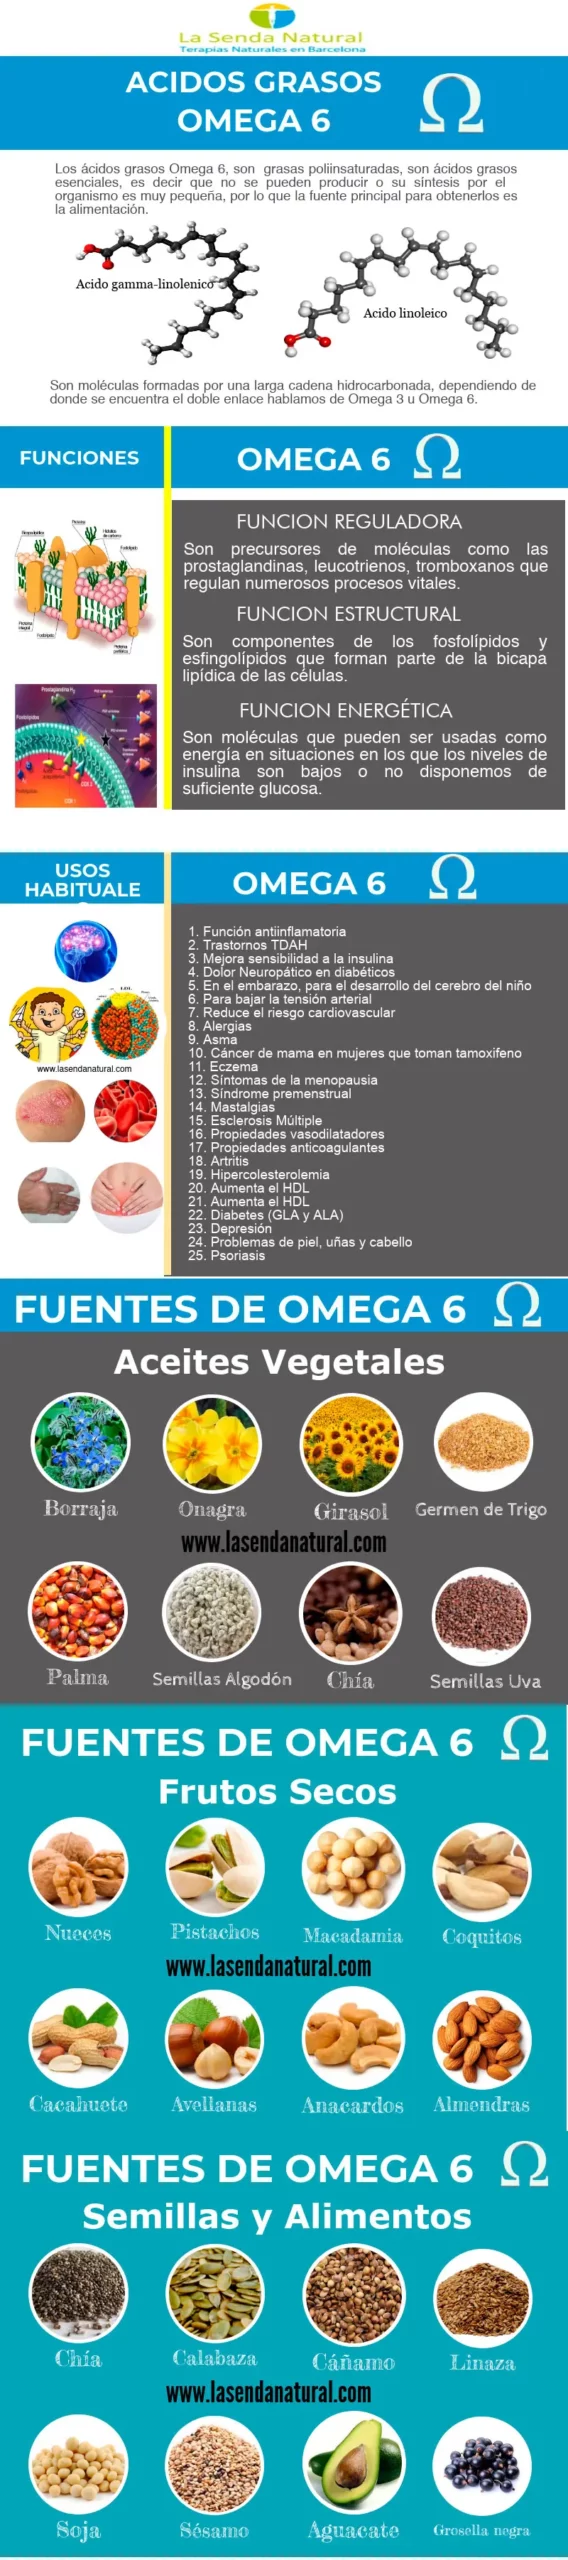 fuentes-omega 6